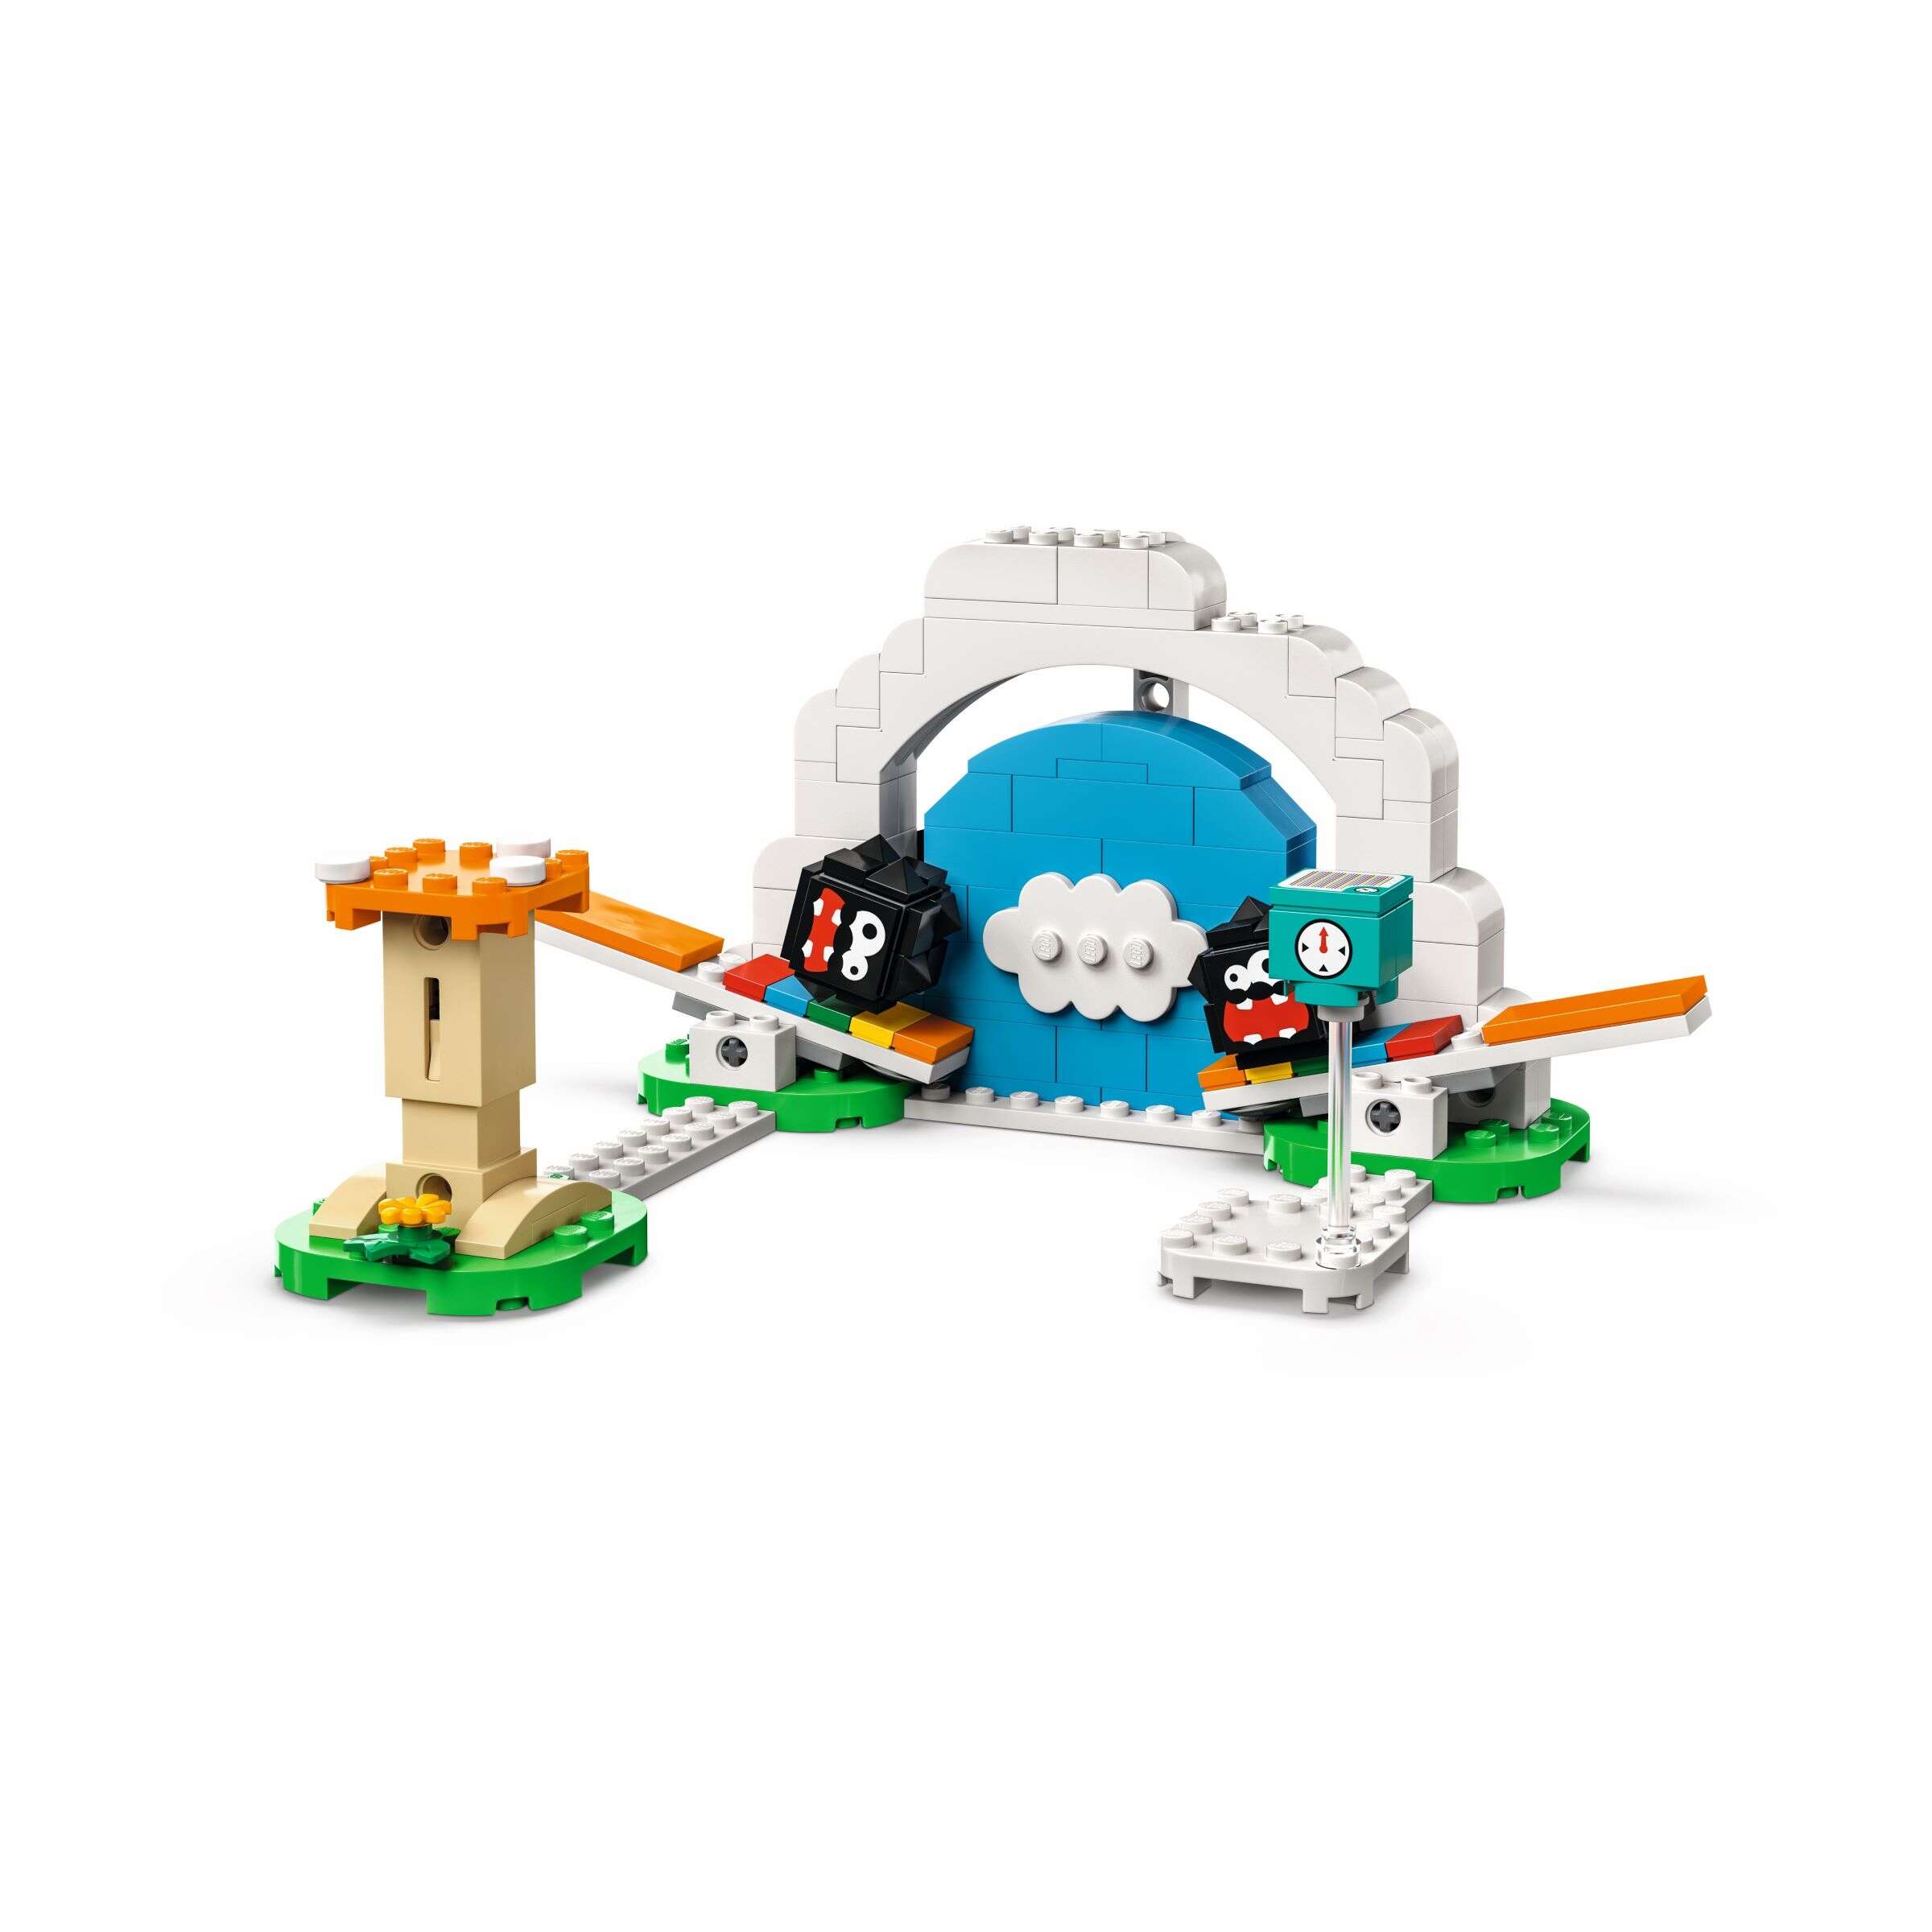 LEGO 71405 Super Mario Fuzzy-Flipper – Erweiterungsset, Pilztrampolin